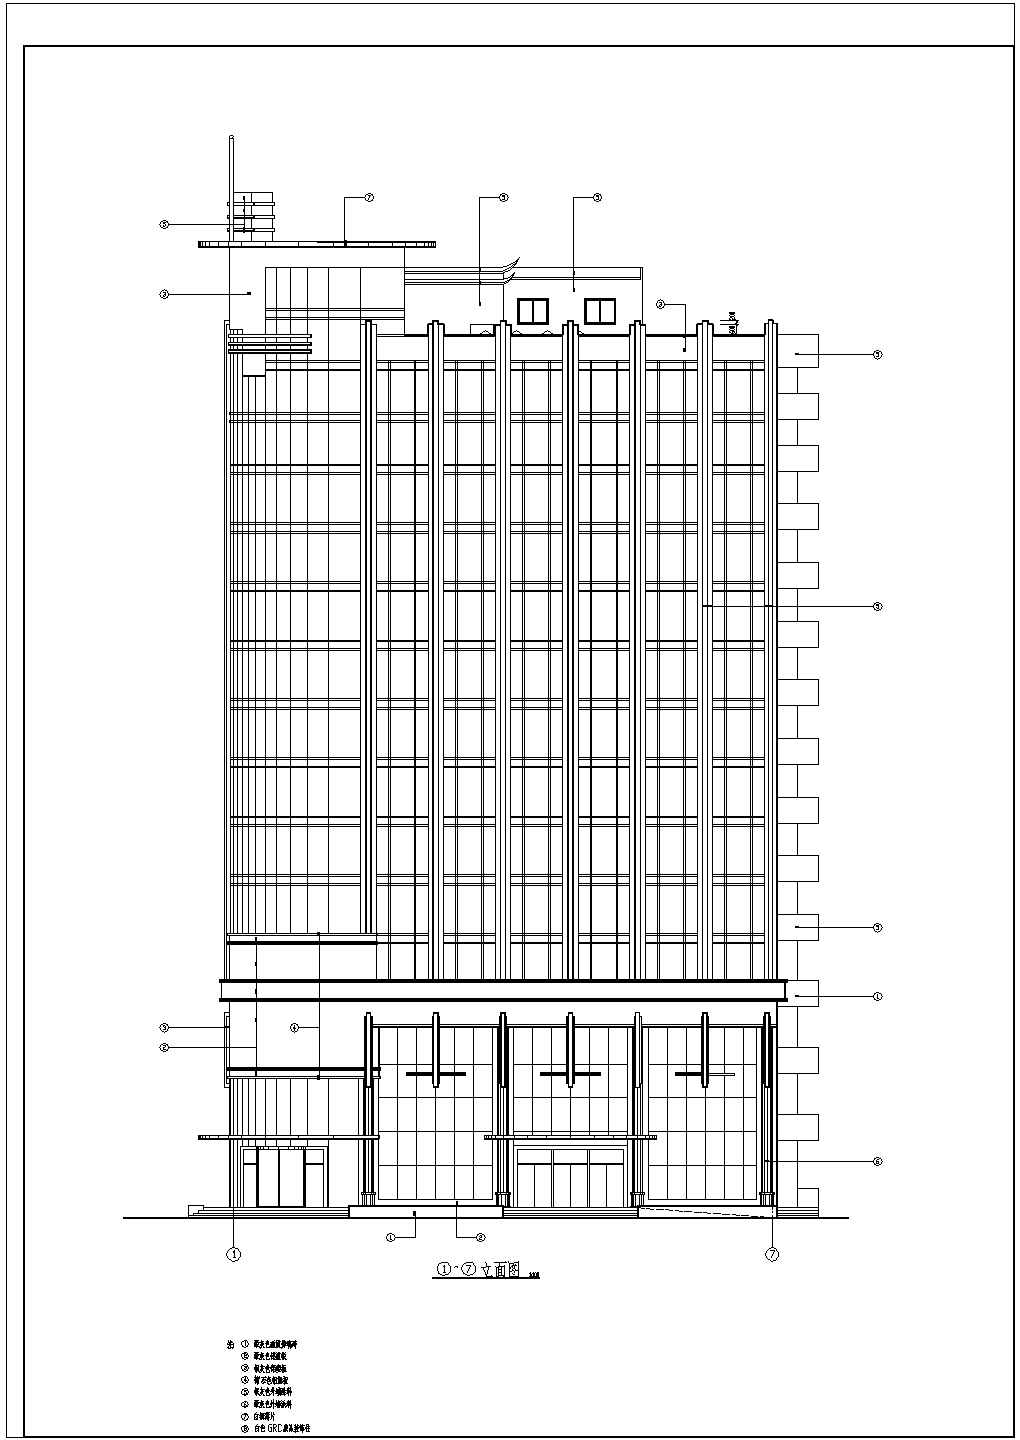 盐城市某高层住宅户型楼层平面图【1楼梯2电梯6户 2个组合 2室2厅 3室2厅 110至135平米之间】